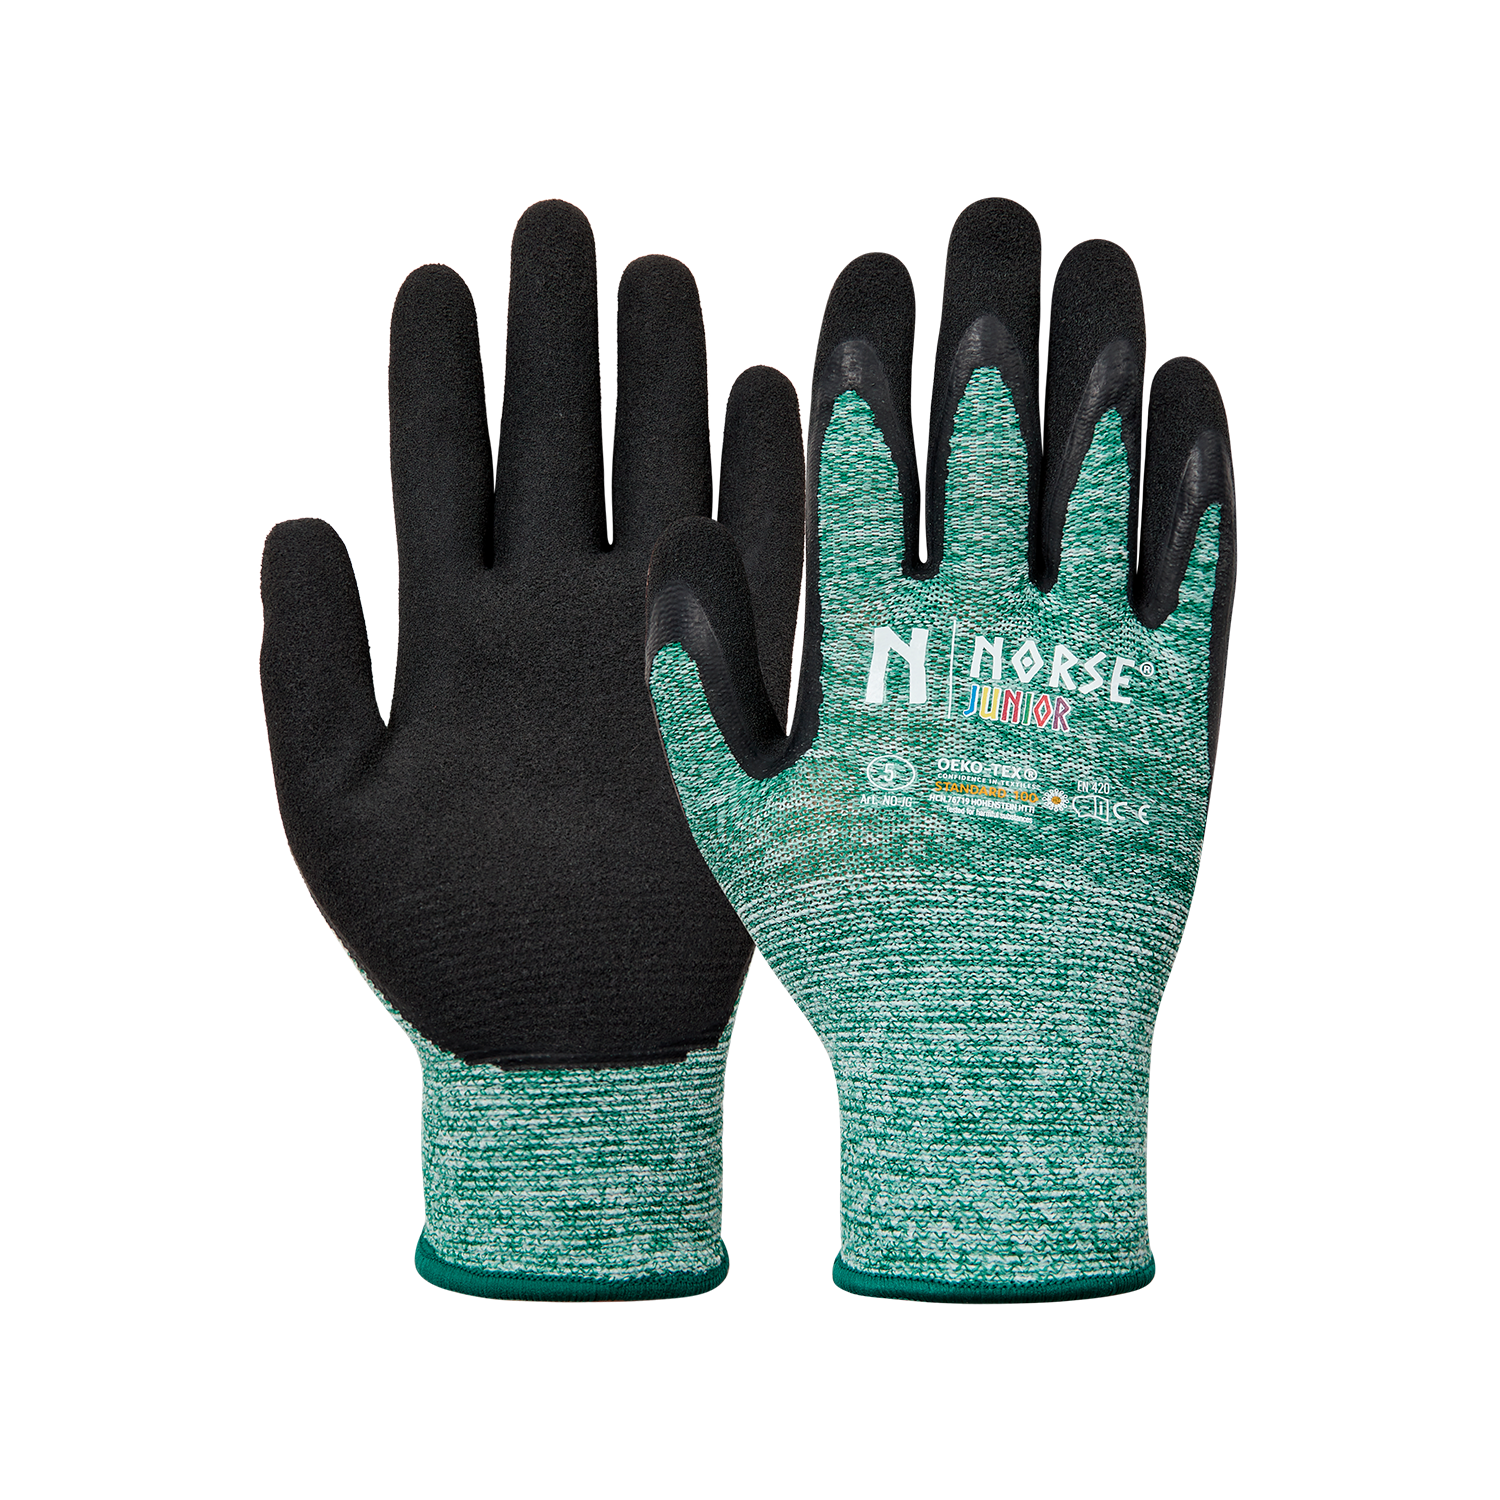 NORSE Junior Green children's gloves size 4